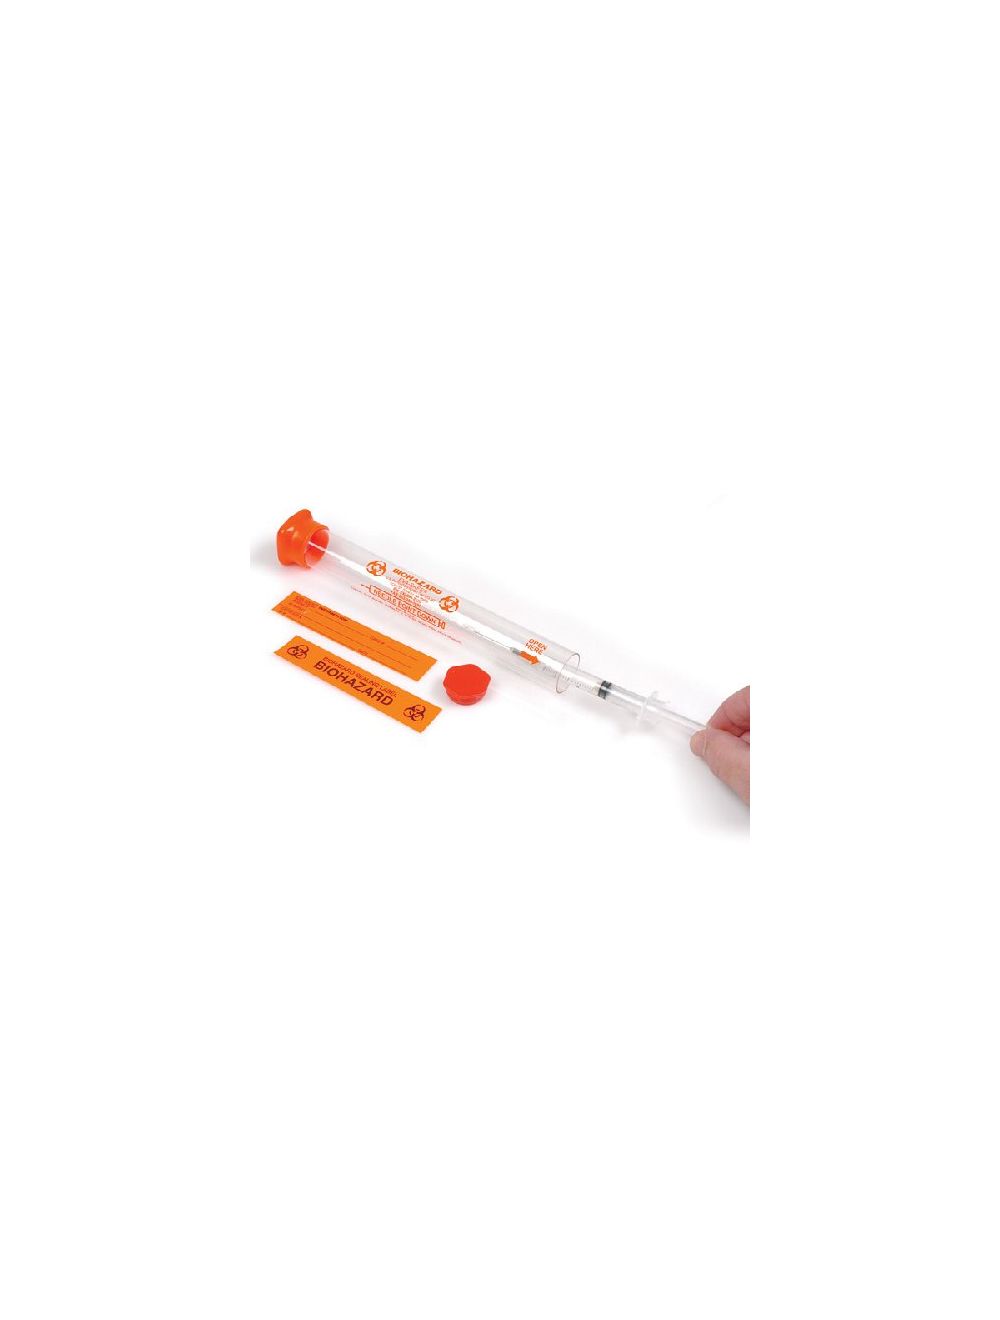 Eva-Safe Syringe Tubes